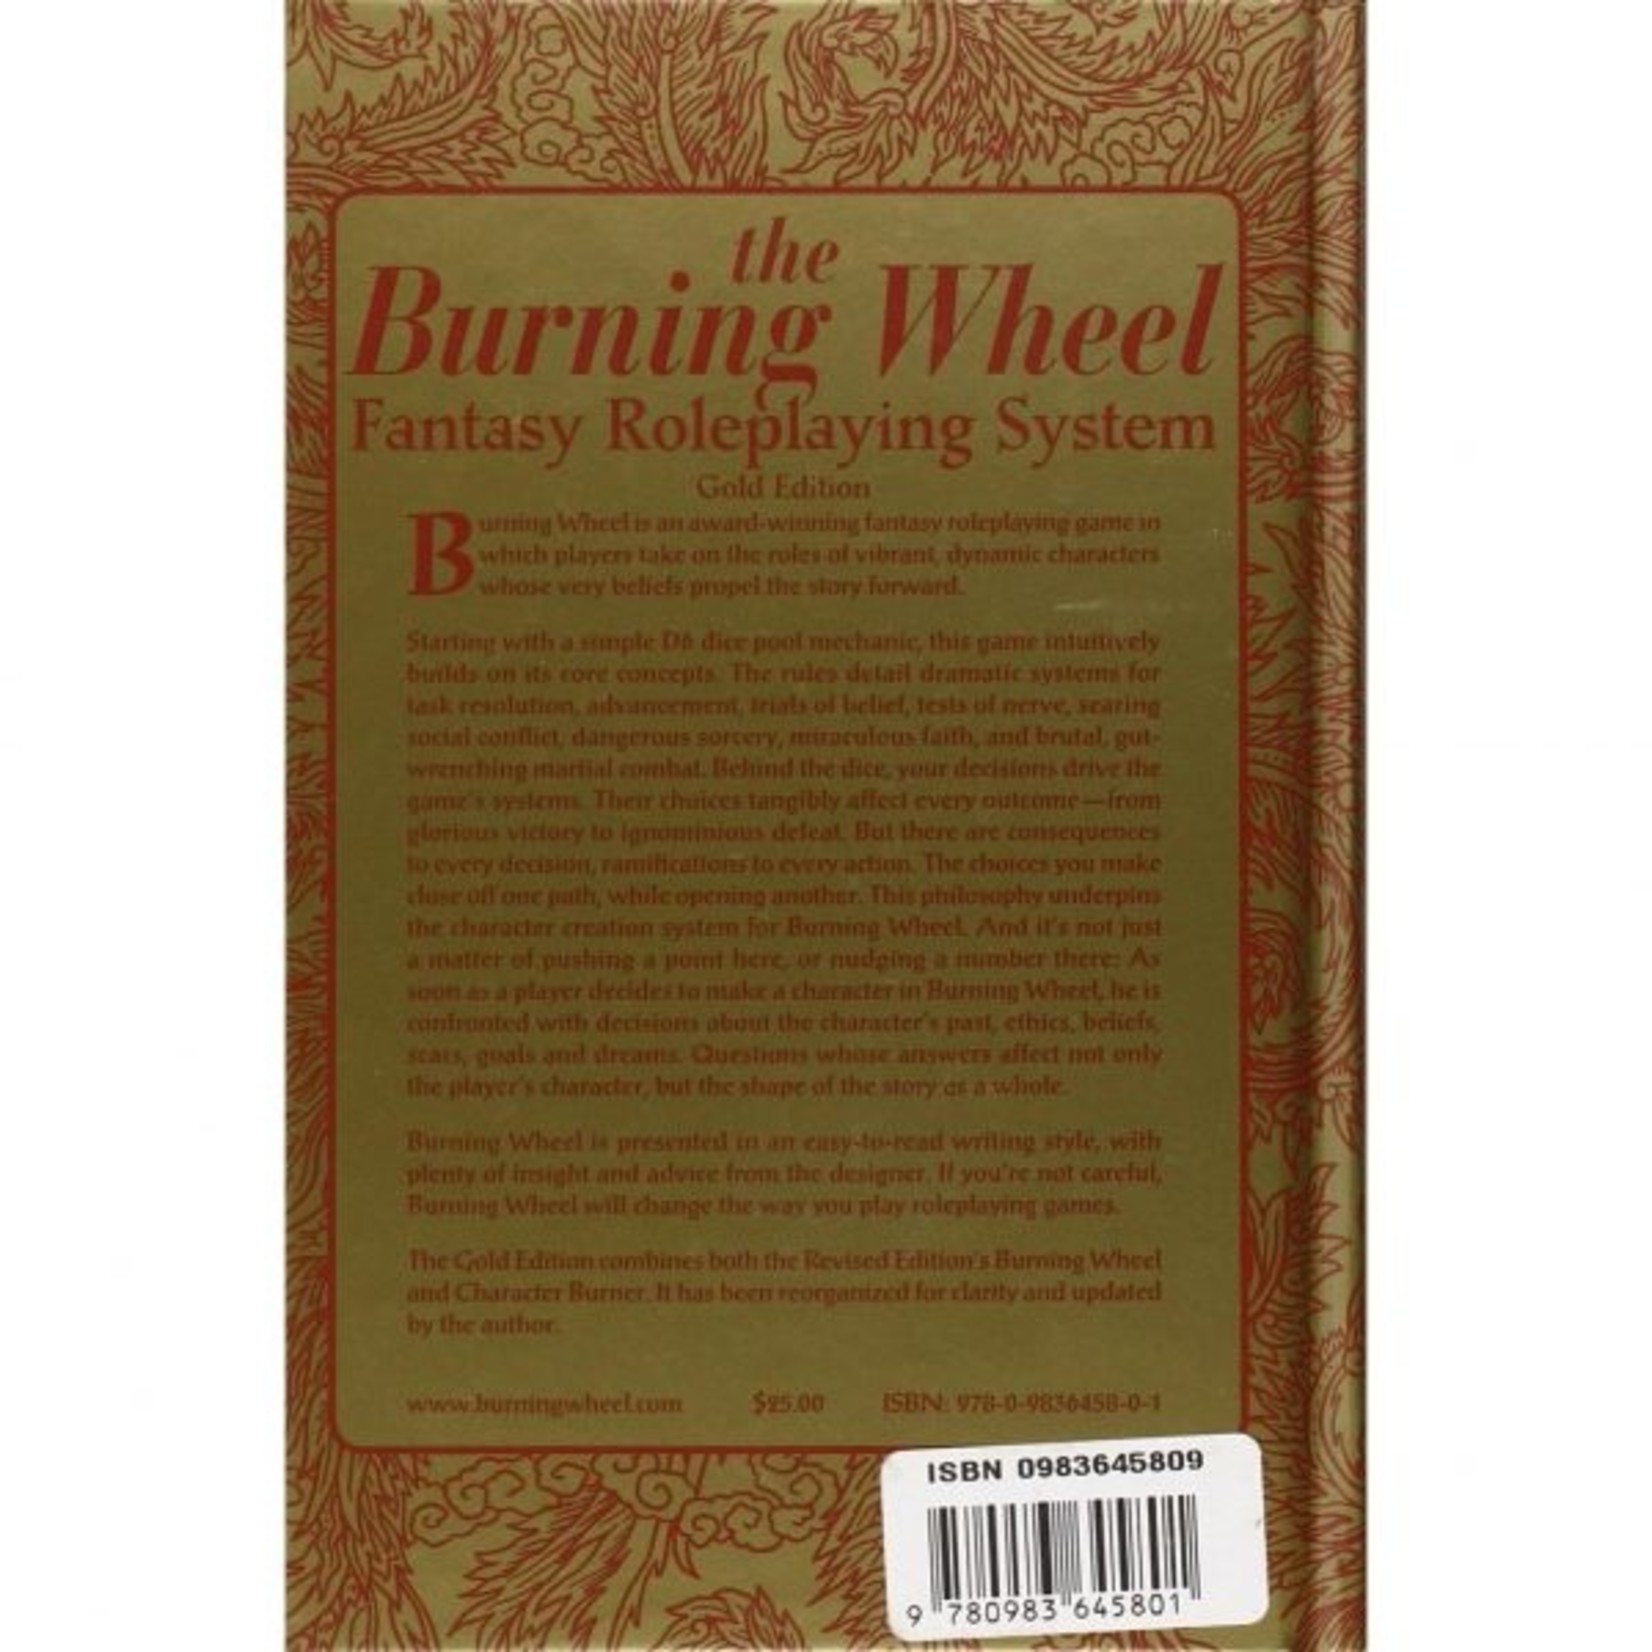 GHQ Burning Wheel Burning Wheel Gold Edition Revised